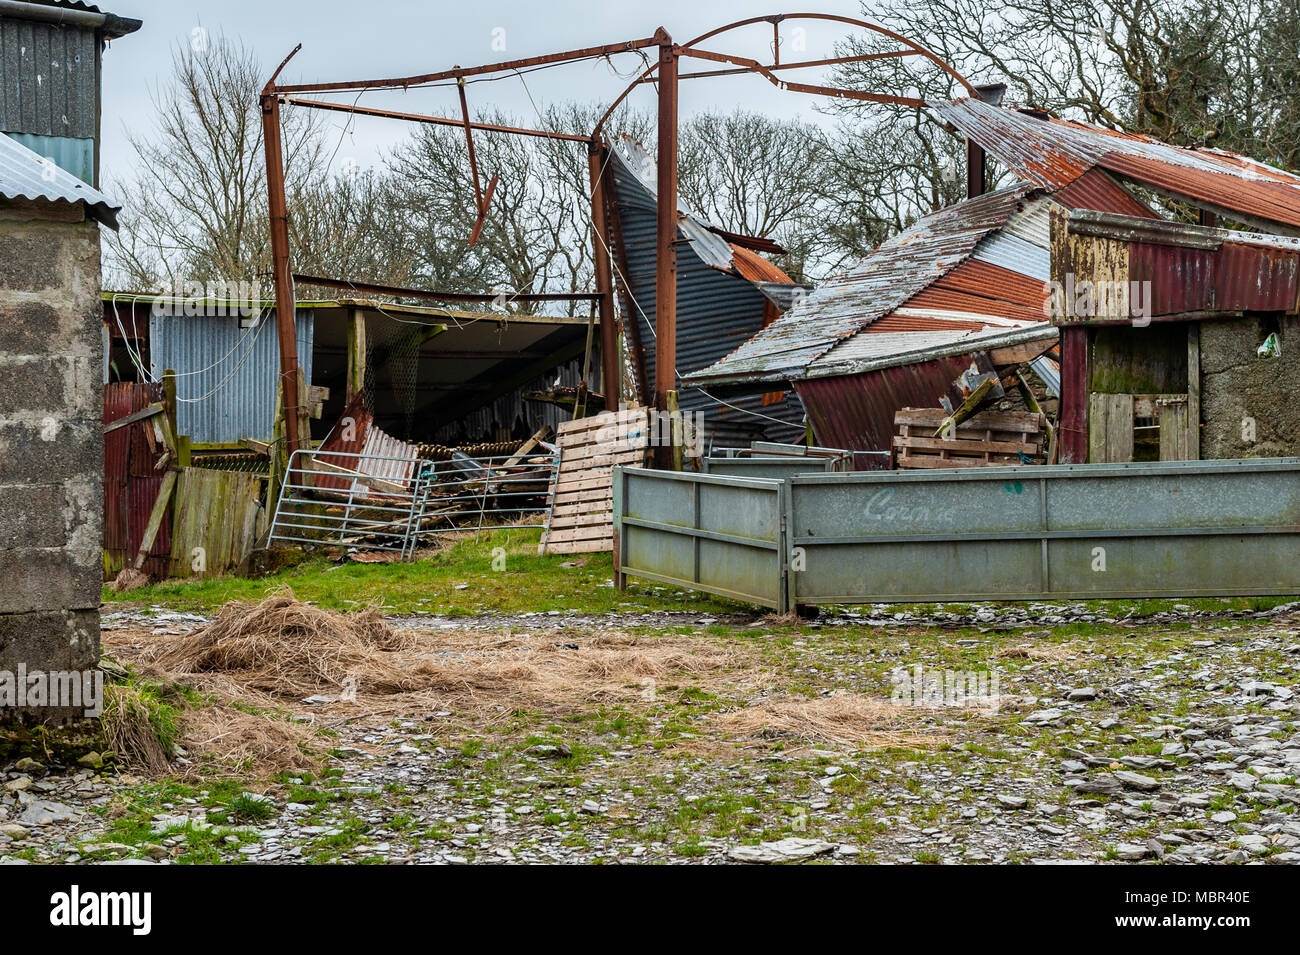 Bâtiment de ferme détruite par des vents violents dans la région de Ballydehob, West Cork, Irlande. Banque D'Images